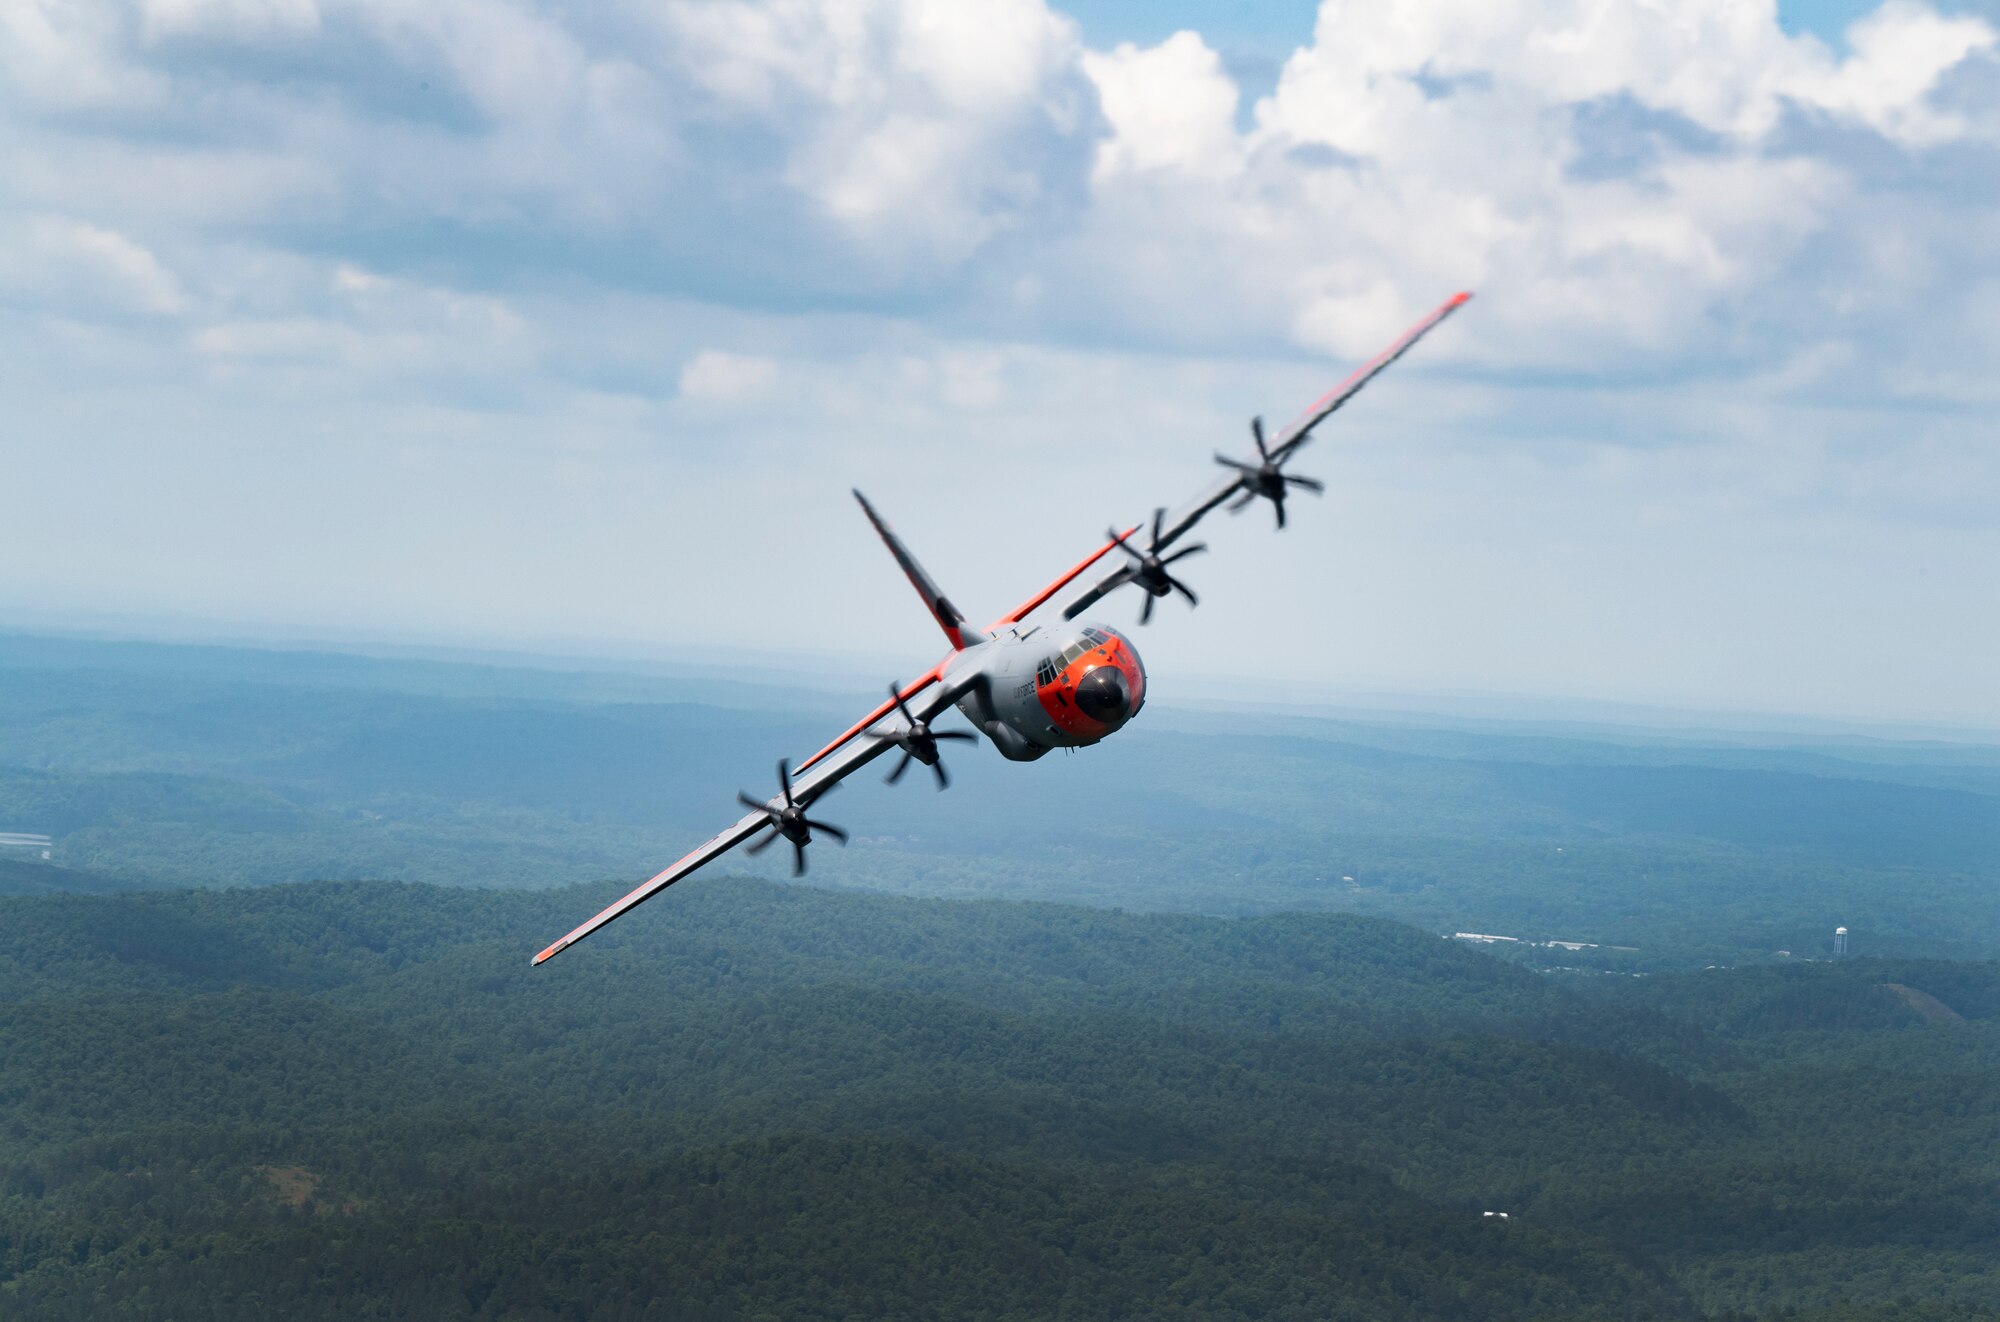 A C-130J Super Hercules flies over Central Arkansas